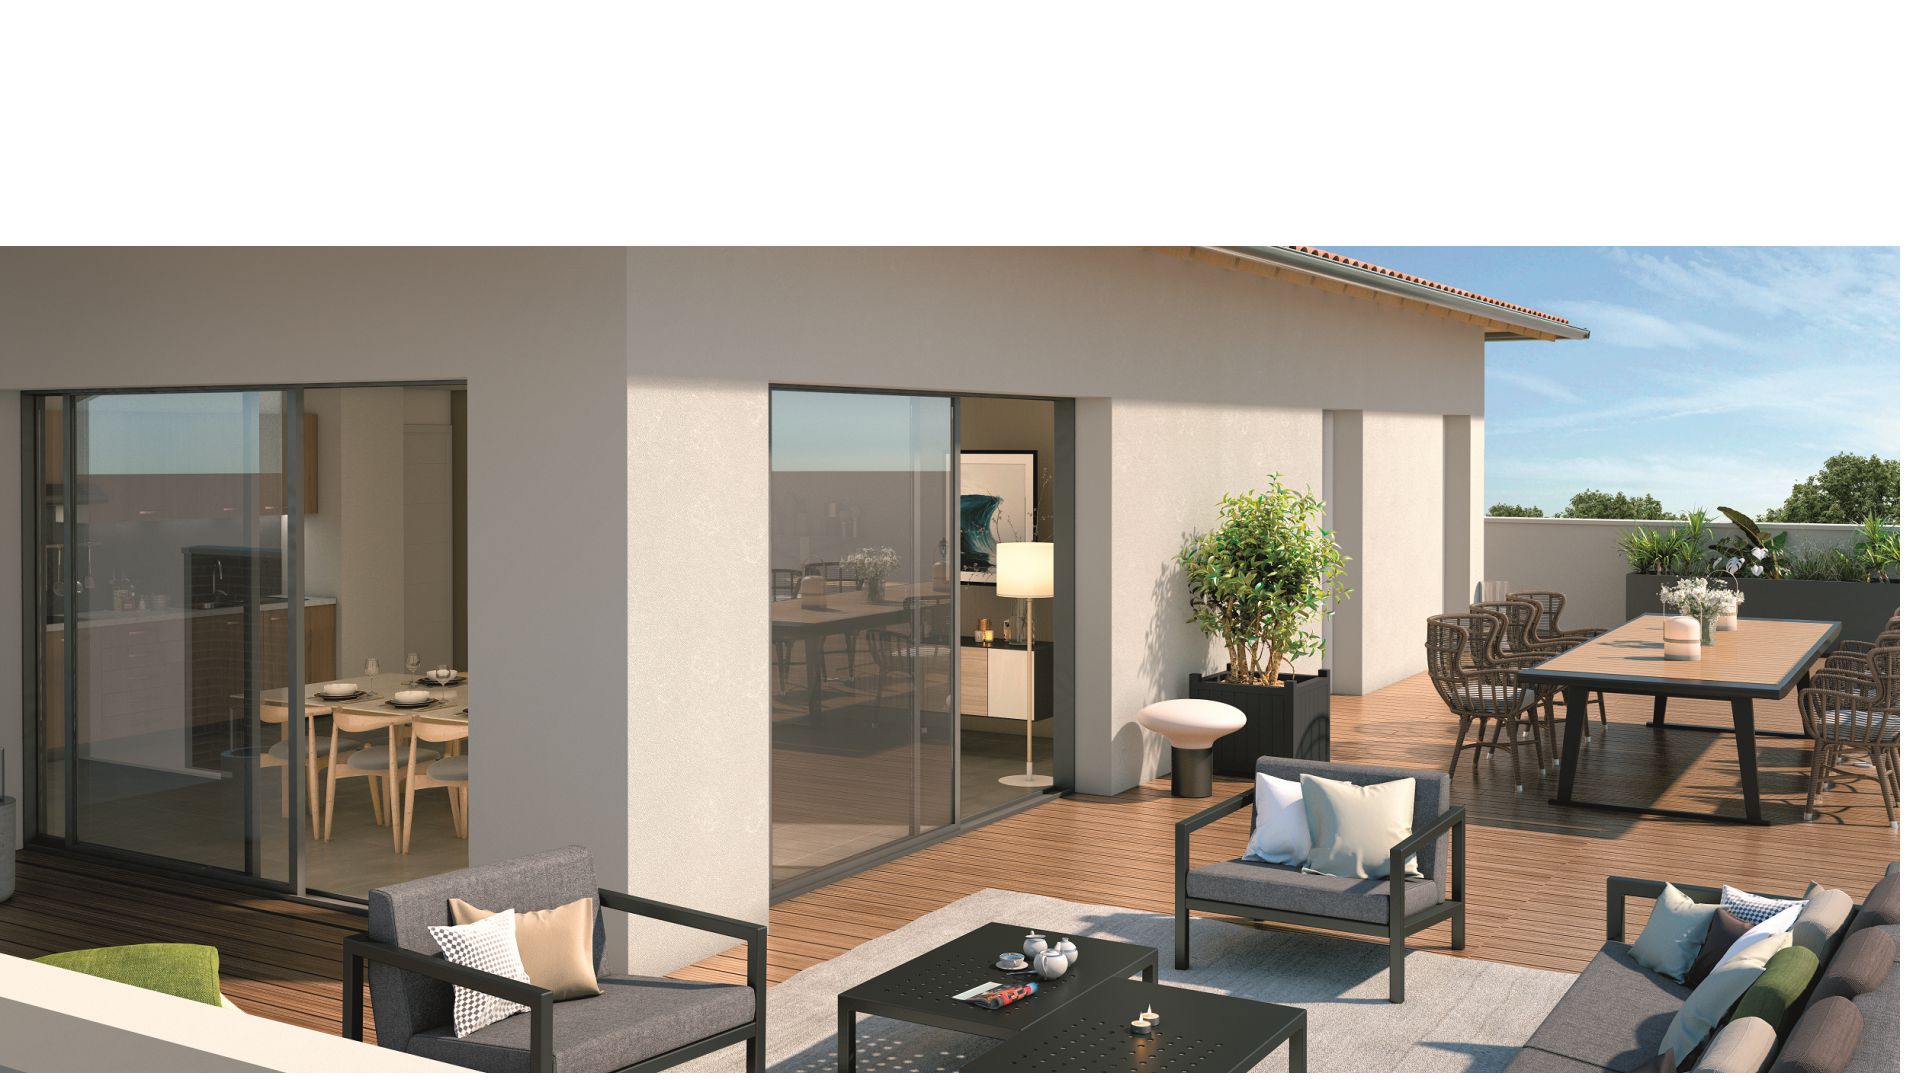 GreenCity immobilier - Le Philharmony  -Castanet Tolosan centre ville - 31320 - appartement du T2 au T5 - vue terrasse